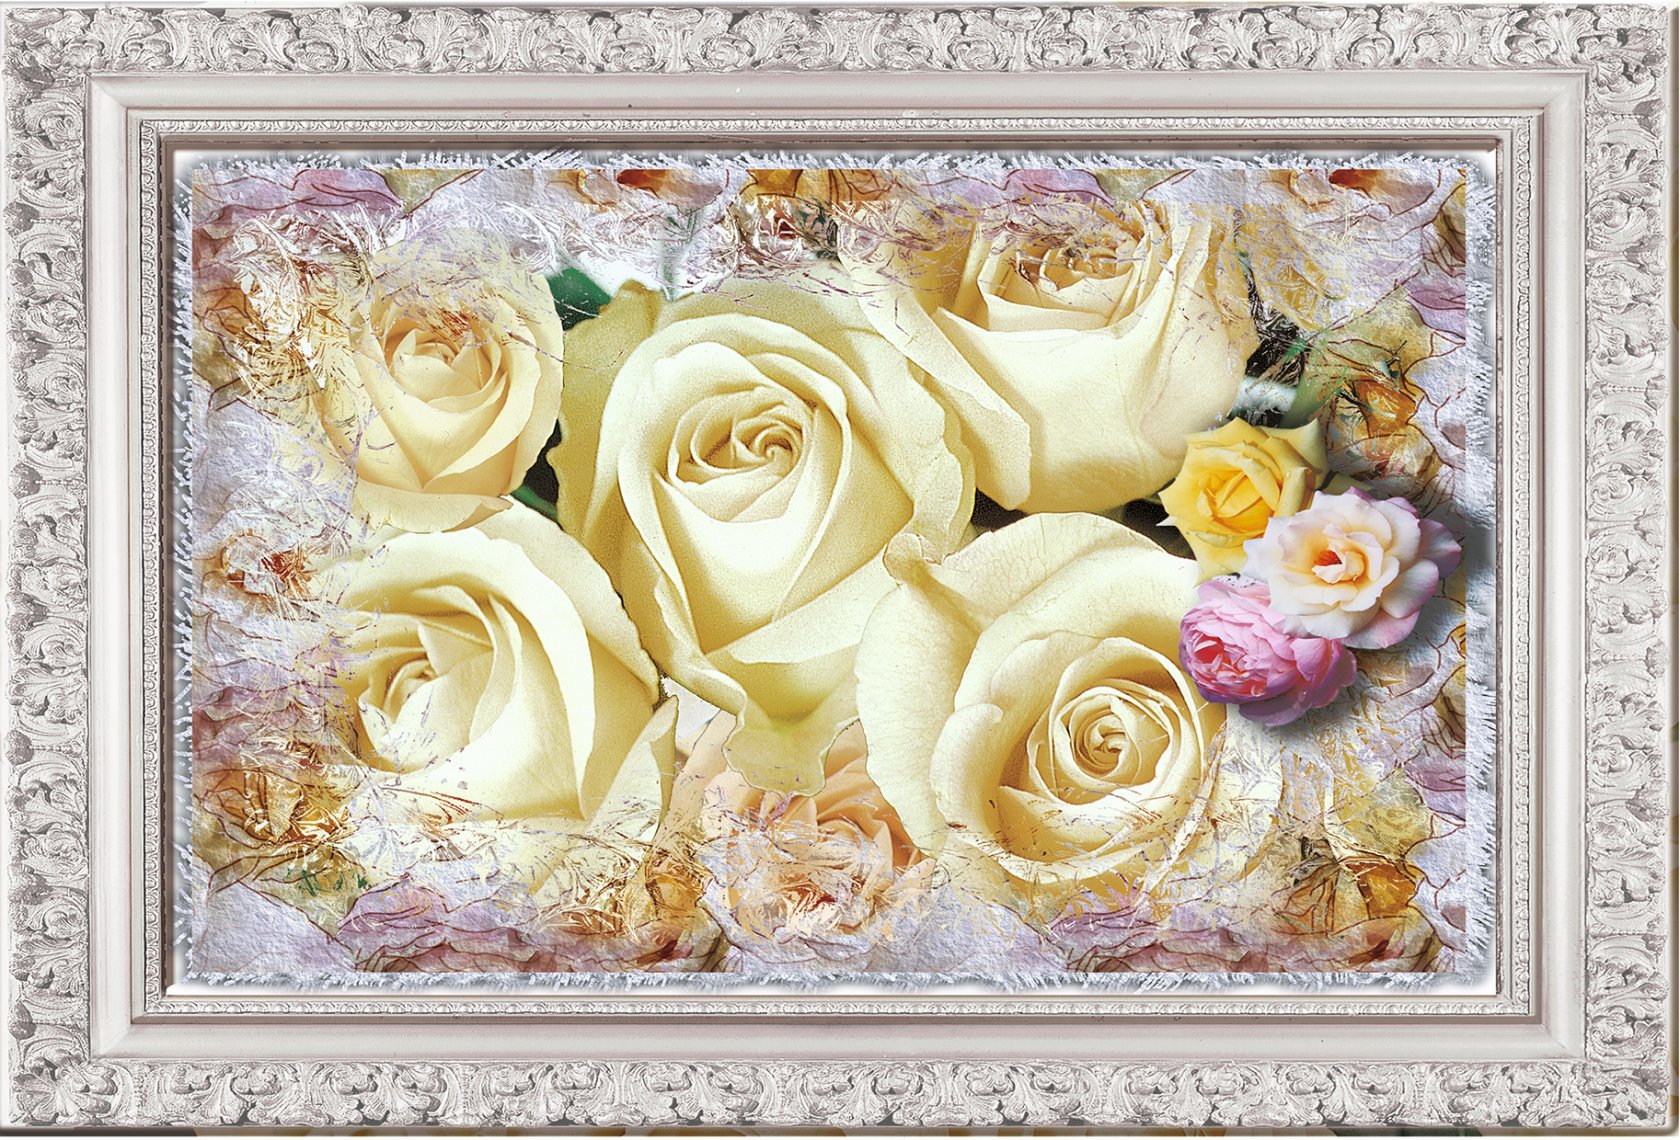 Фотообои Тула бумажные глянцевые Картина розы 134/98 см 2 листа